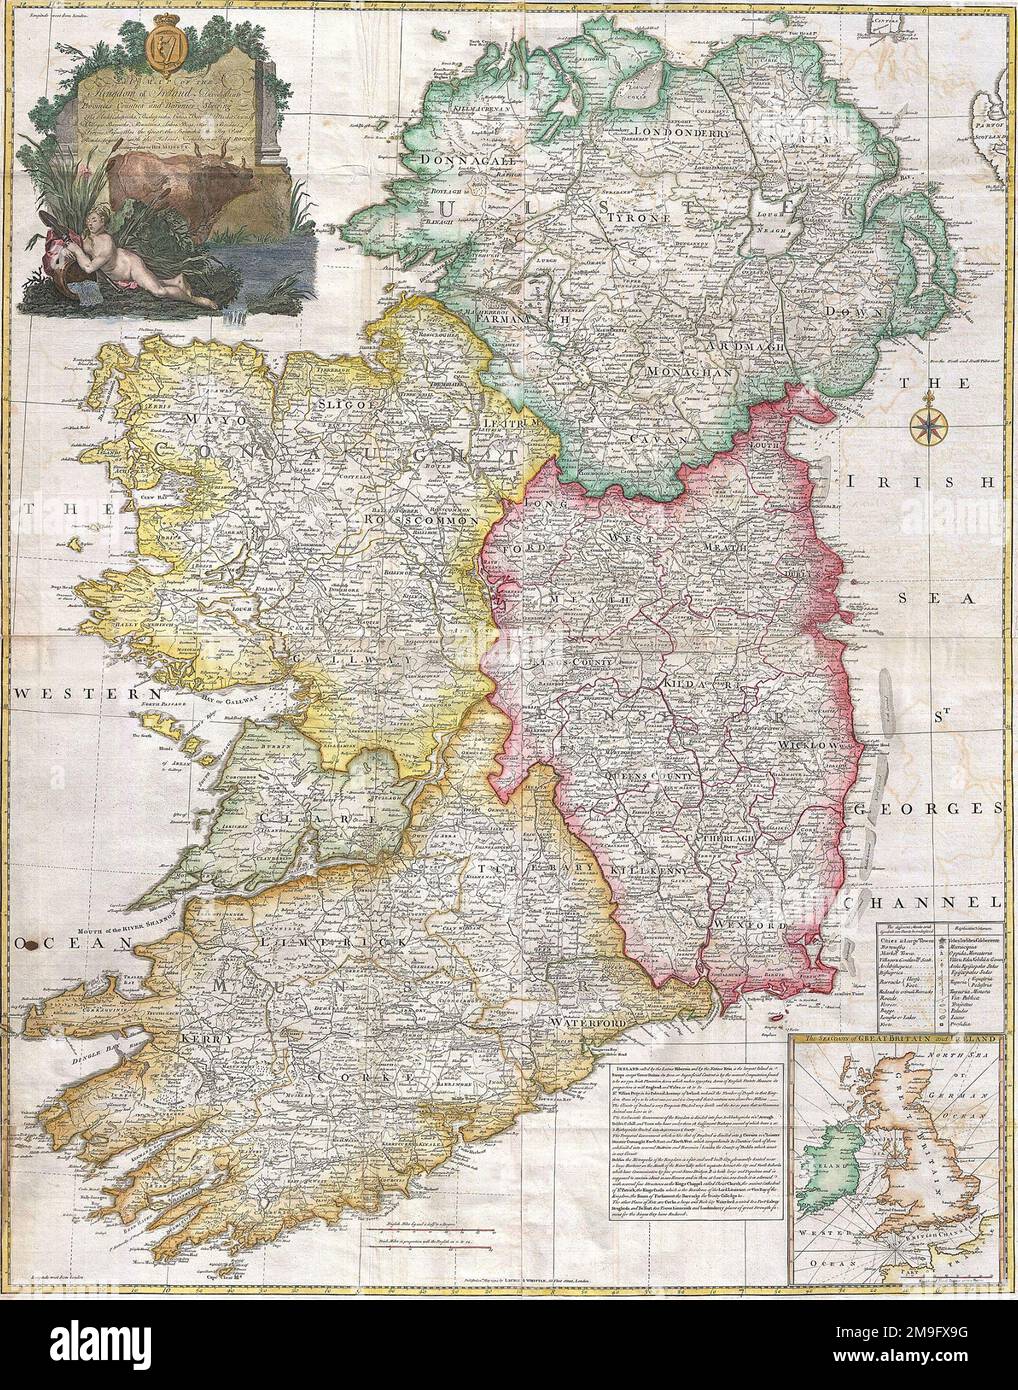 IRLANDE carte par le cartographe français Jean Rocque 1794 Banque D'Images